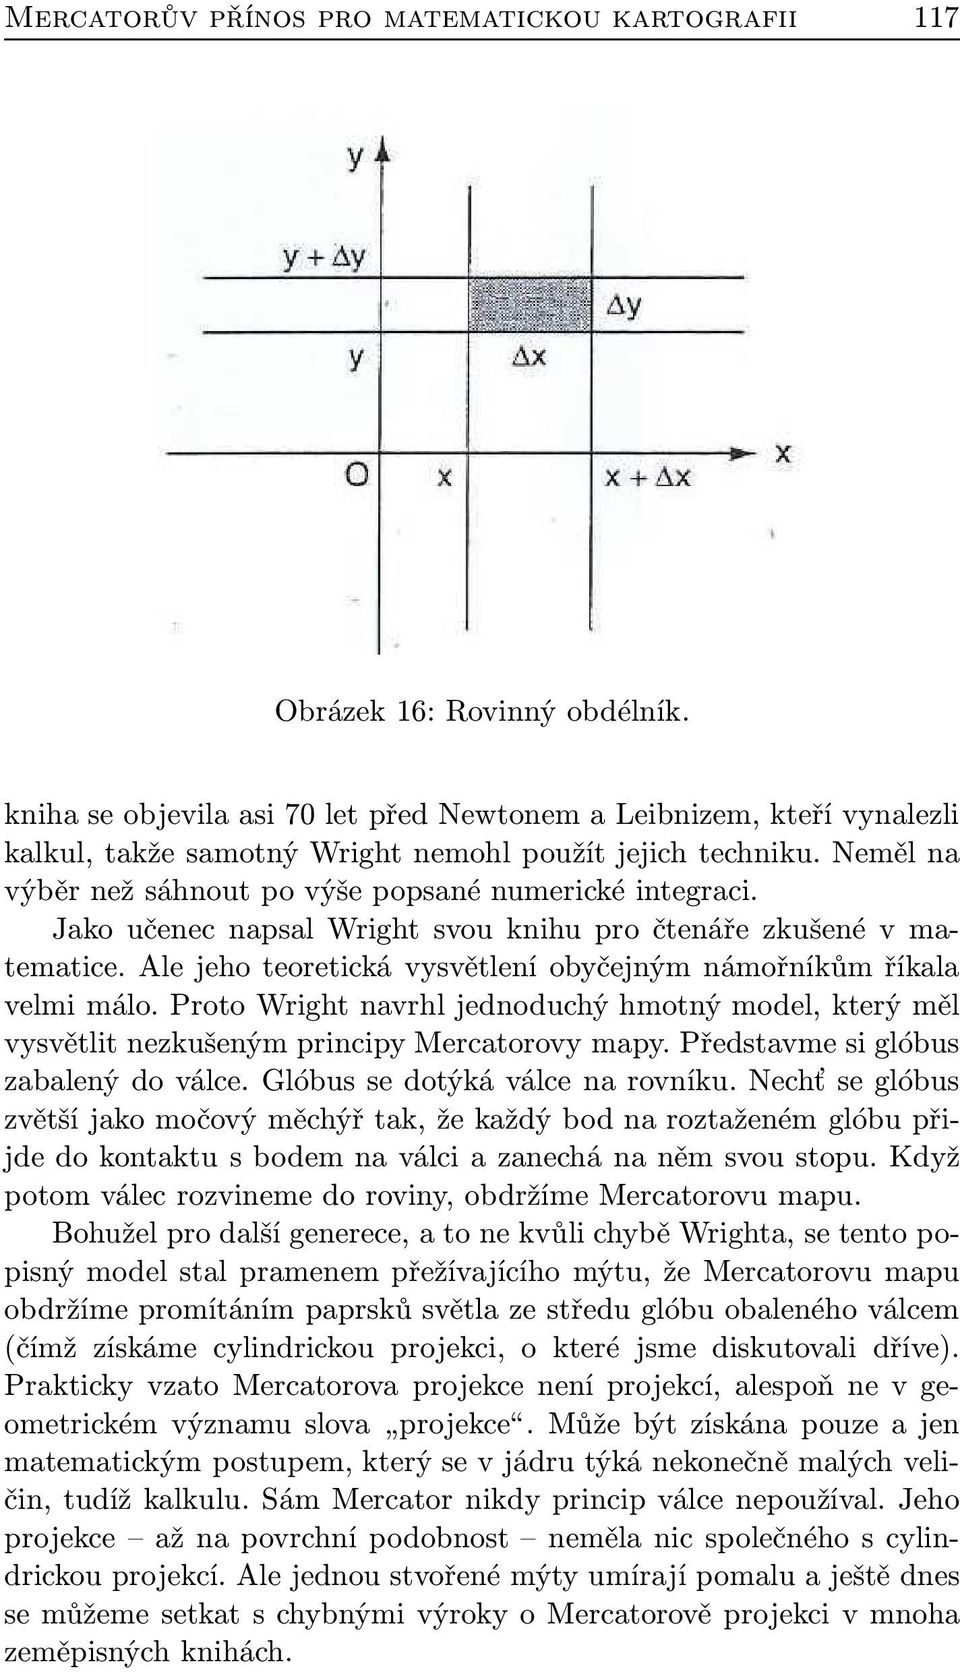 Jako učenec napsal Wright svou knihu pro čtenáře zkušené v matematice. Ale jeho teoretická vysvětlení obyčejným námořníkům říkala velmi málo.